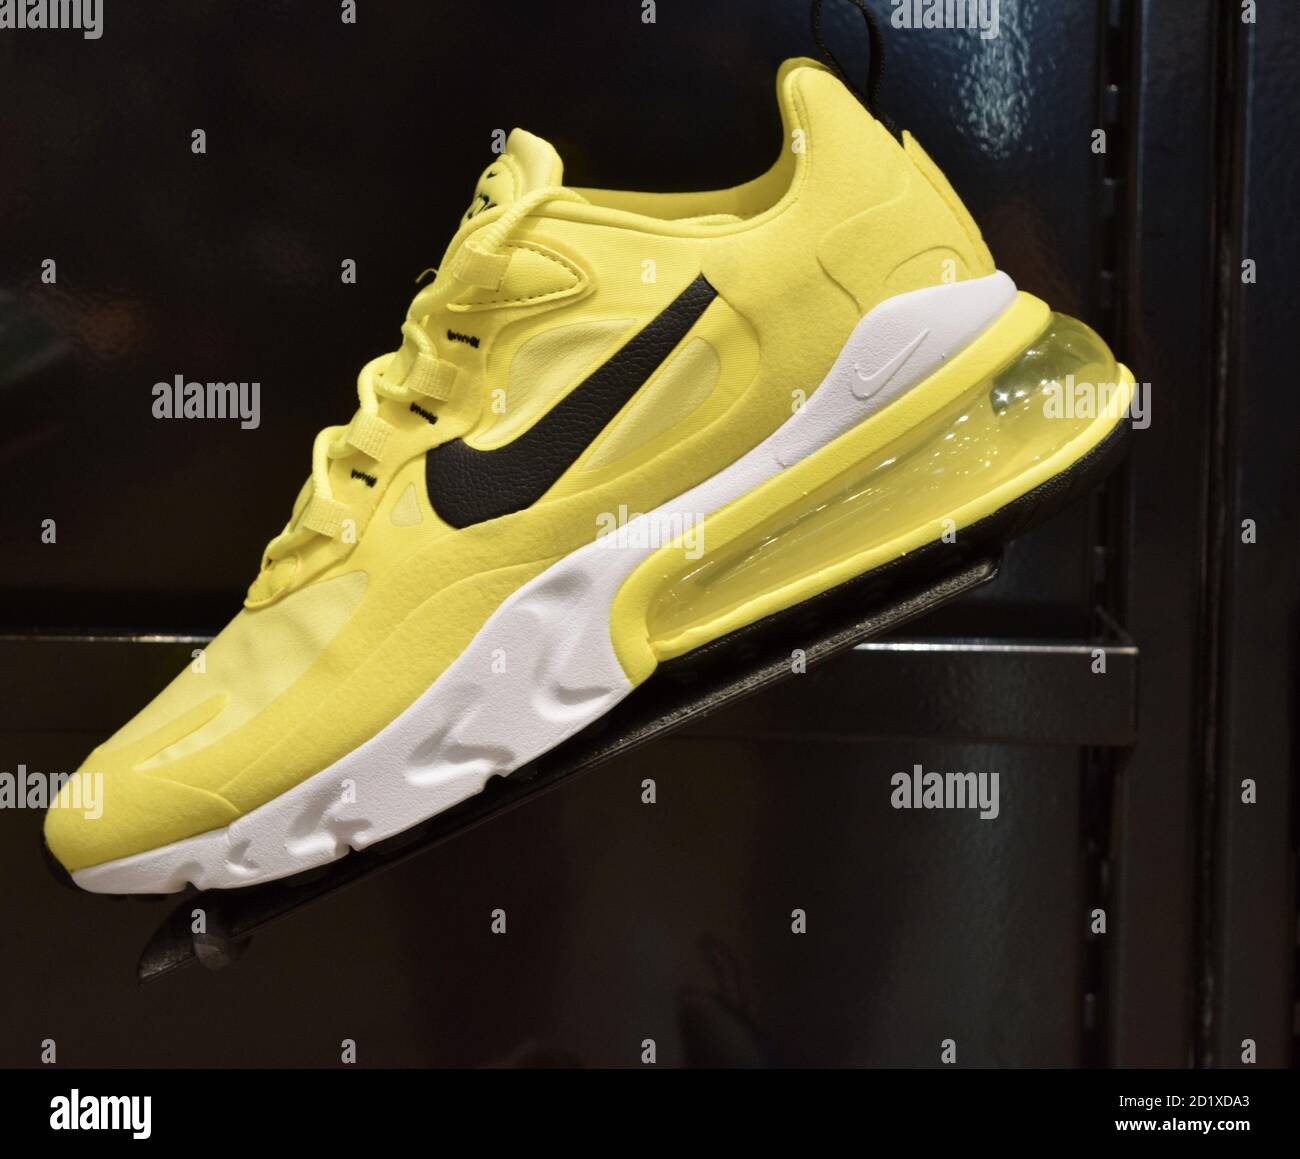 FRESNO, ESTADOS UNIDOS - Sep 01, 2020: Una foto de una zapatilla Nike  amarilla muy brillante con el logotipo Nike negro y fondo blanco y amarillo  contra una w negra Fotografía de stock - Alamy